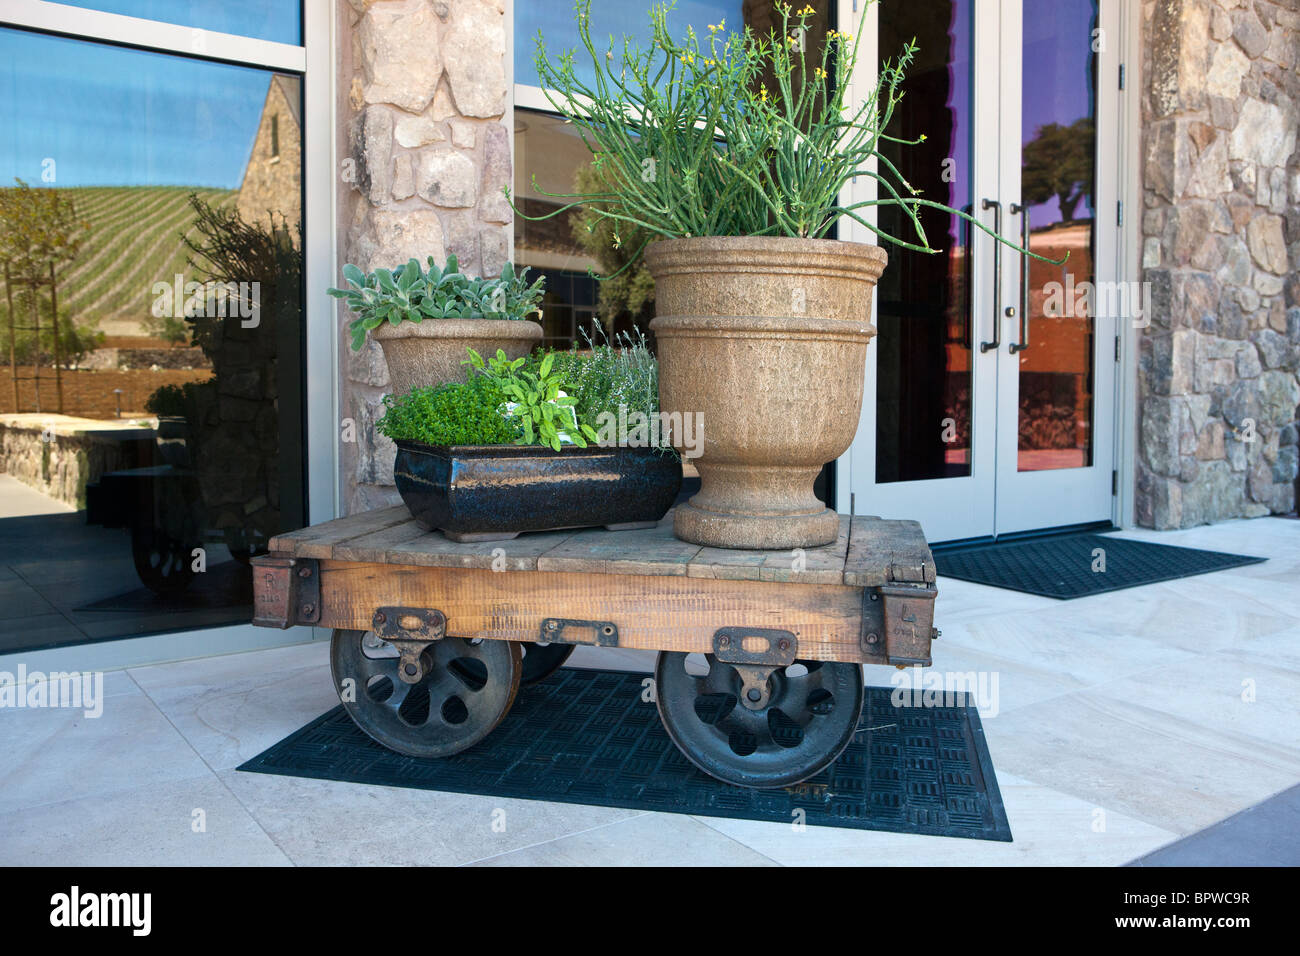 Eisenbahnwaggon verwendet als Tabelle für Pflanzer, Bergbau Niner Wine Estates Winery, Paso Robles, Kalifornien, Vereinigte Staaten von Amerika Stockfoto